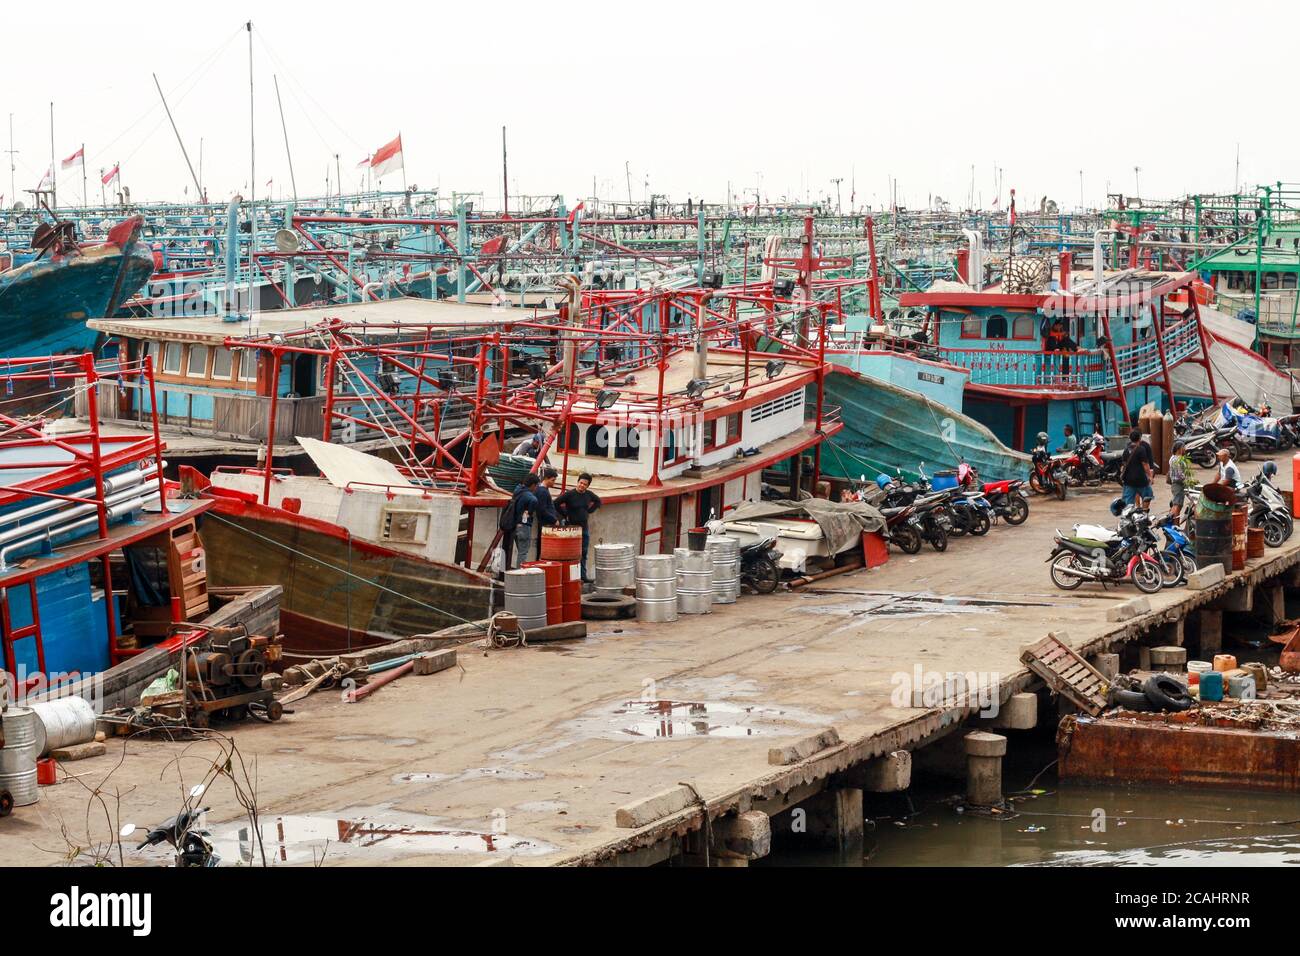 Jakarta, Indonesia - April 21, 2019: Fishing boats anchored at the Muara Angke Port, Penjaringan, North Jakarta. Stock Photo